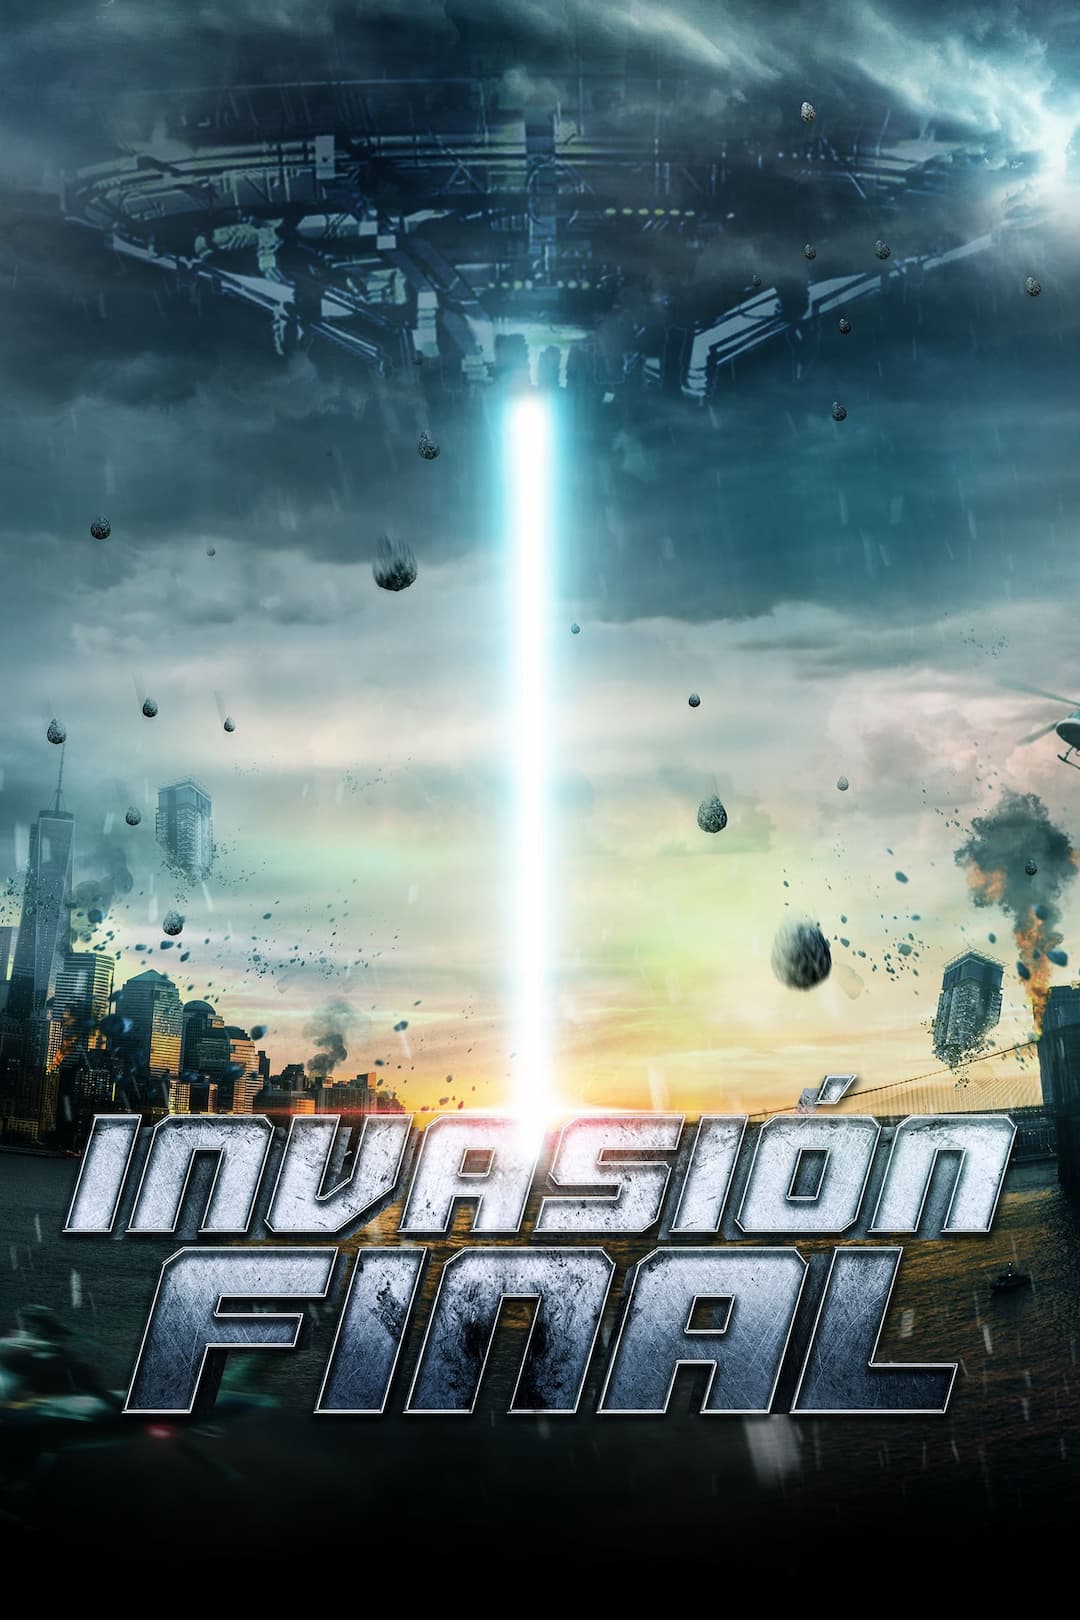 Invasion Final